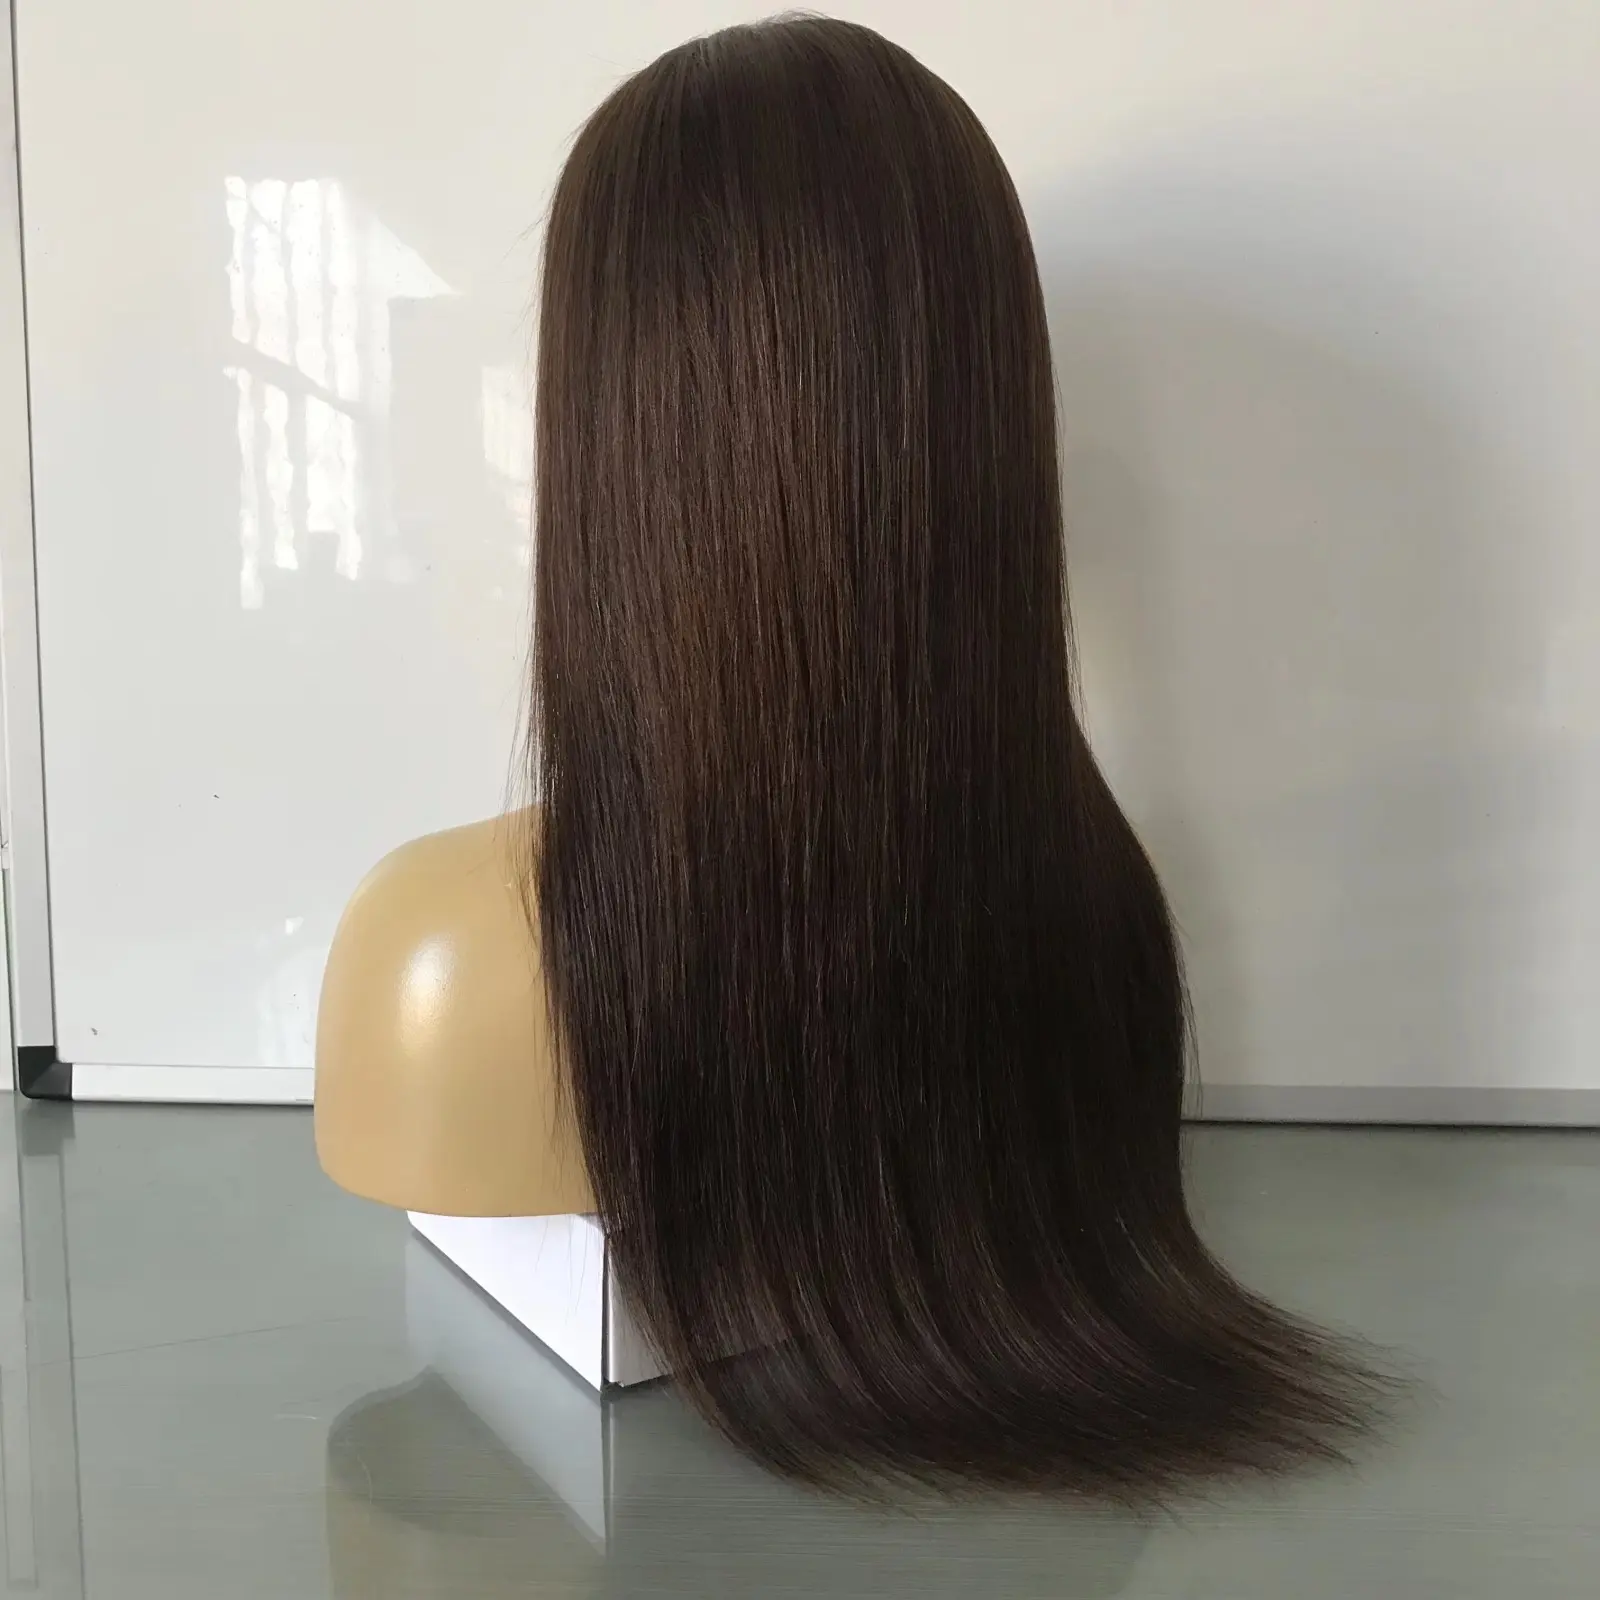 Amara Echthaar Perücken brasilia nische peruanische Klasse 13a und lange braune glatte Haar Perücke 250% Dichte Echthaar Perücke und 26 Zoll